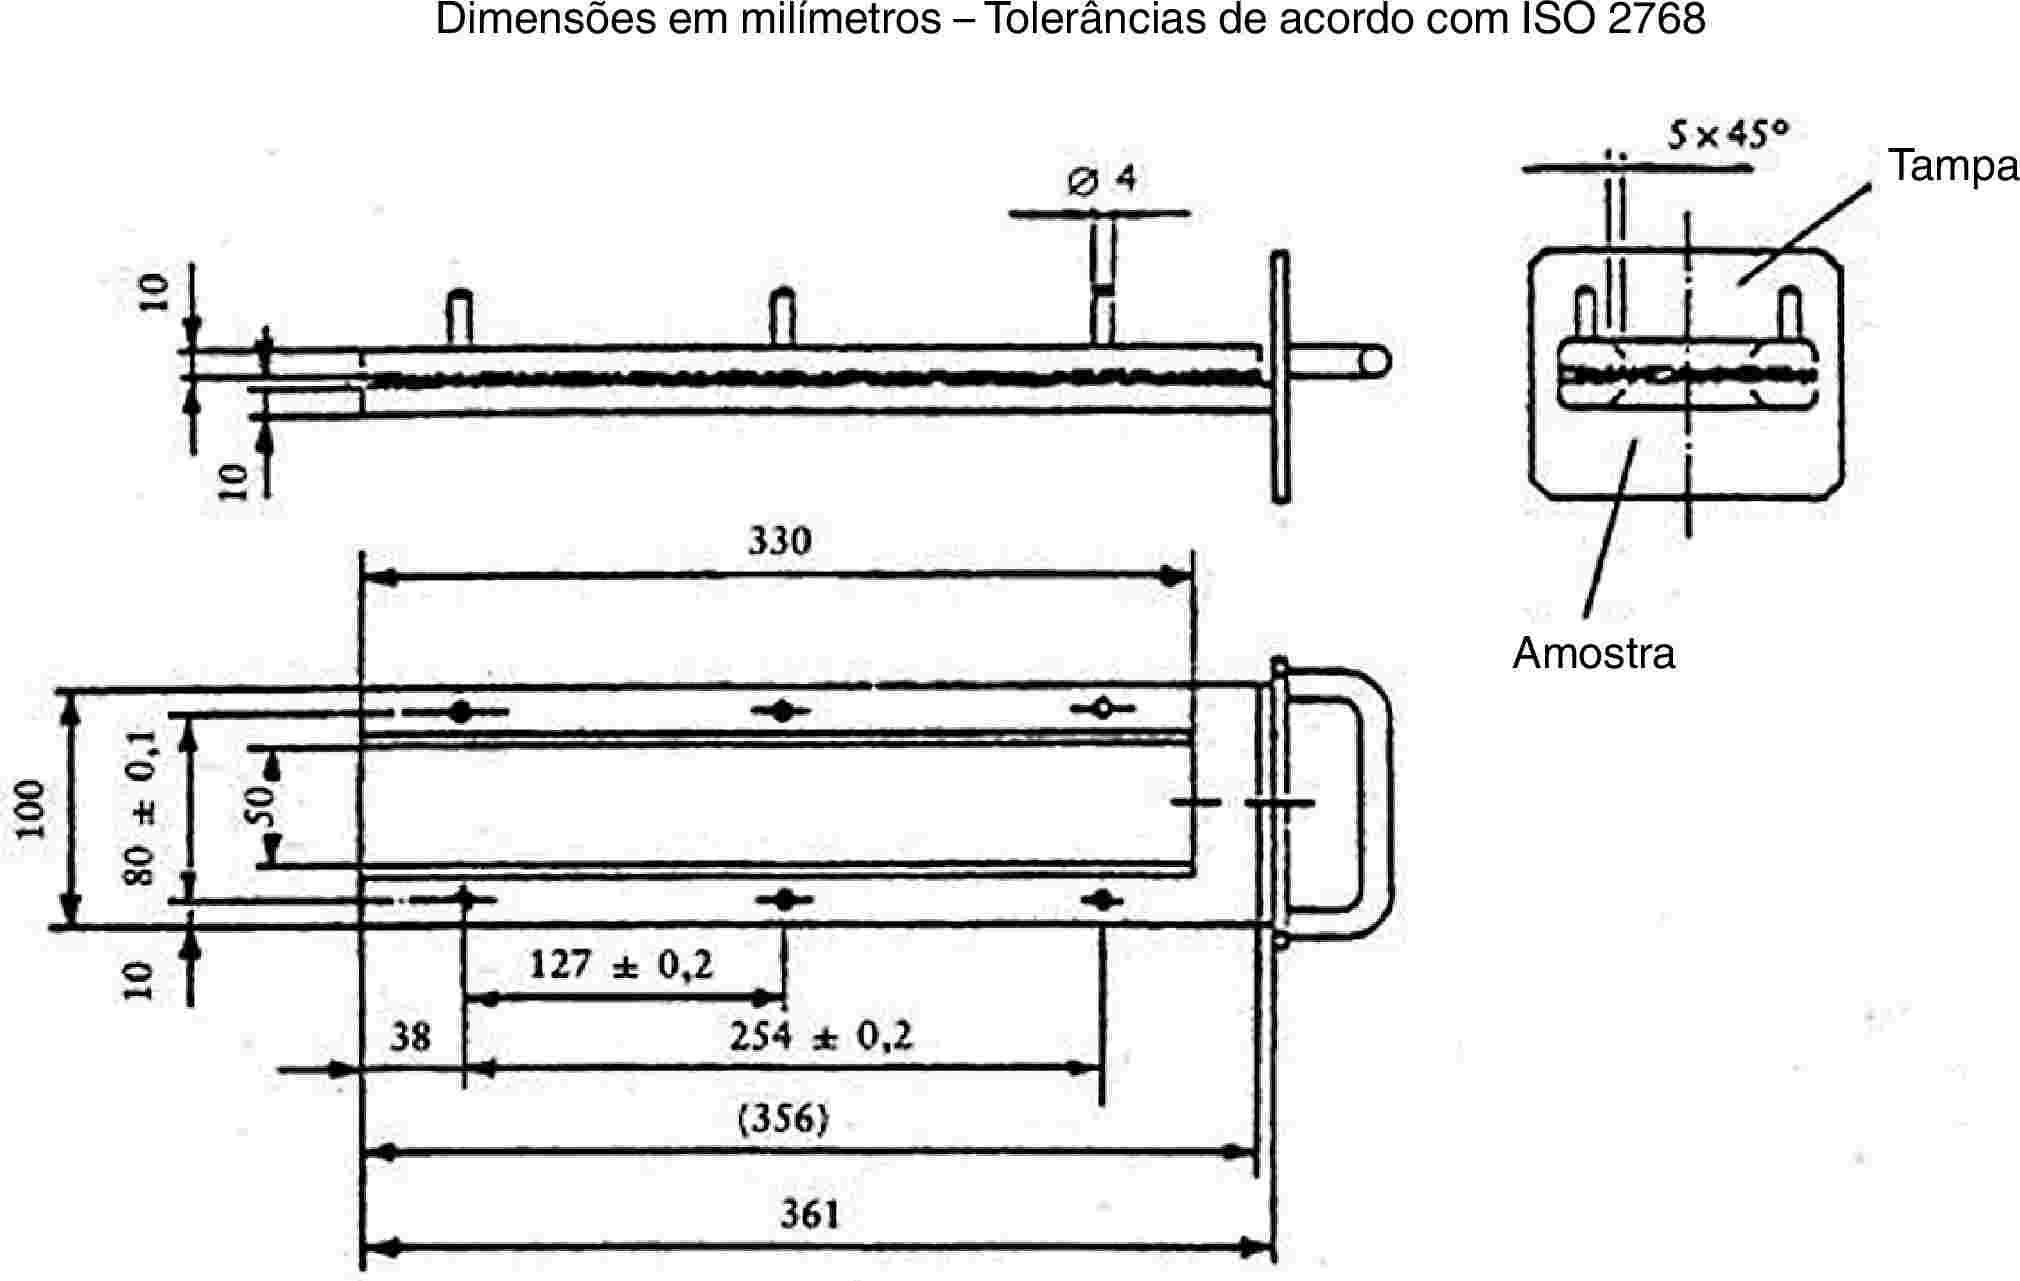 Dimensões em milímetros – Tolerâncias de acordo com ISO 2768TampaAmostra